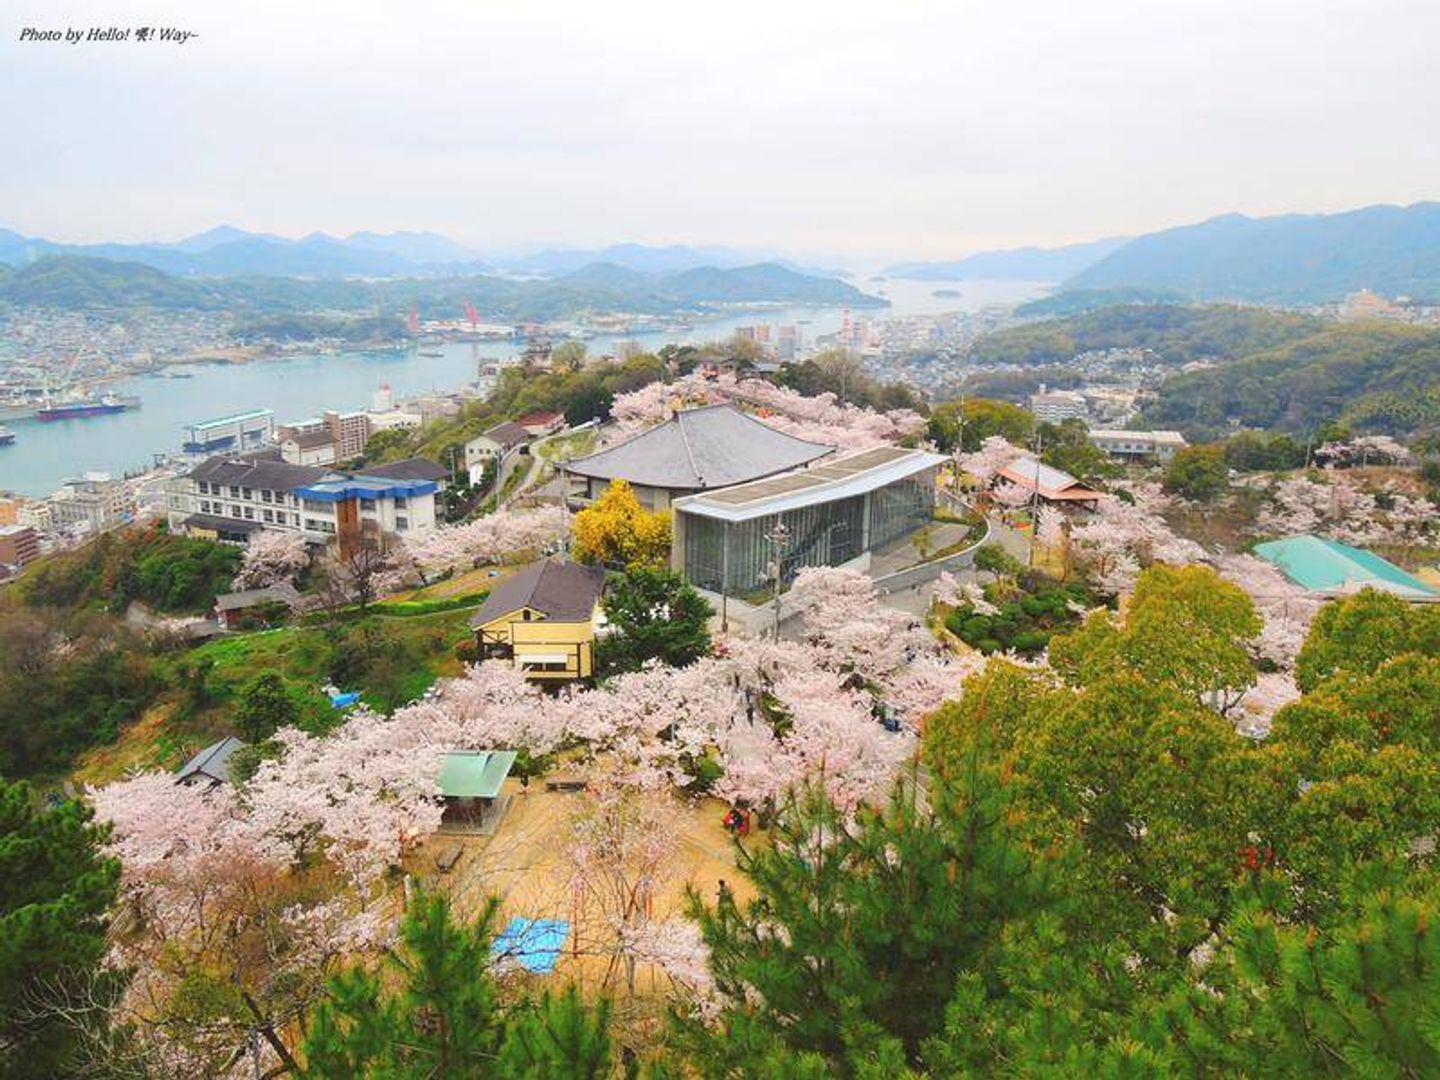 廣島尾道 從猫の細道登上千光寺公園一眺瀨戶內海仰望櫻花色的天空 日本 中國地方 旅行酒吧